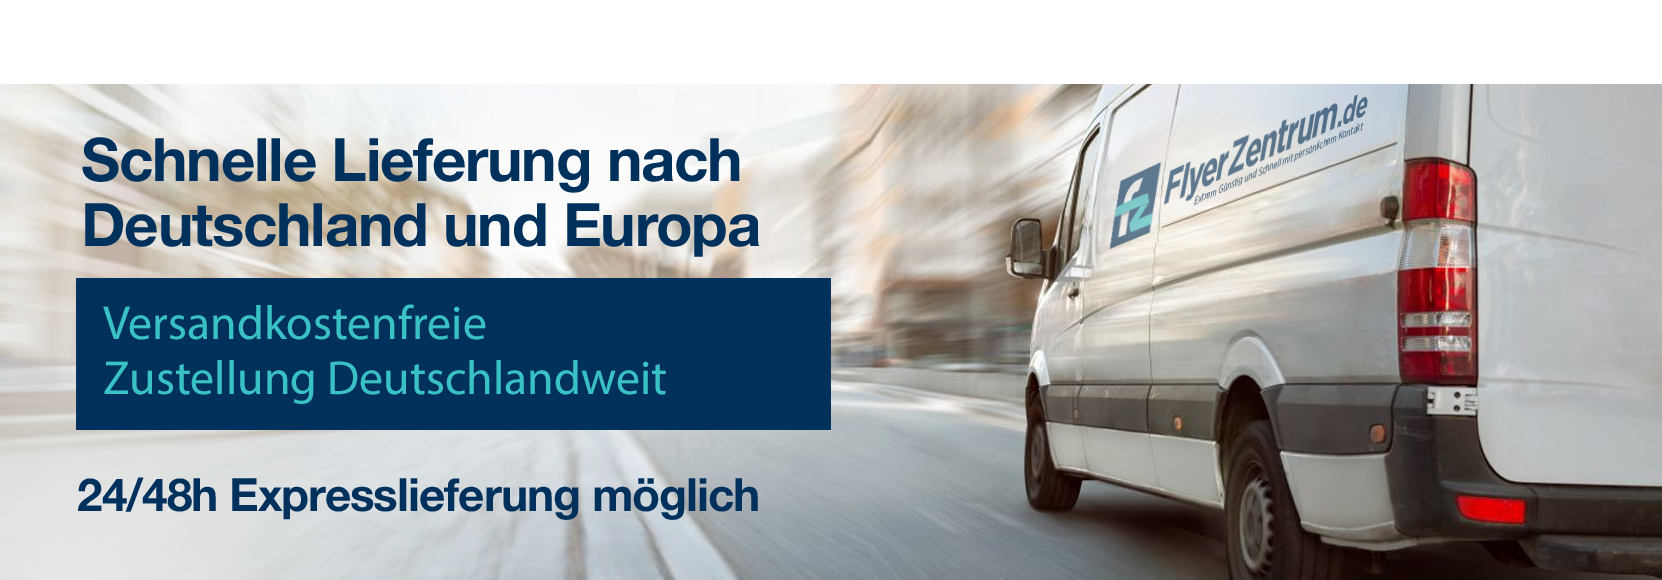 Schnelle Lieferung nach Deutschland und Europa - Versandkostenfreie Zustellung Deutschlandweit - 24/48h Expresslieferung möglich